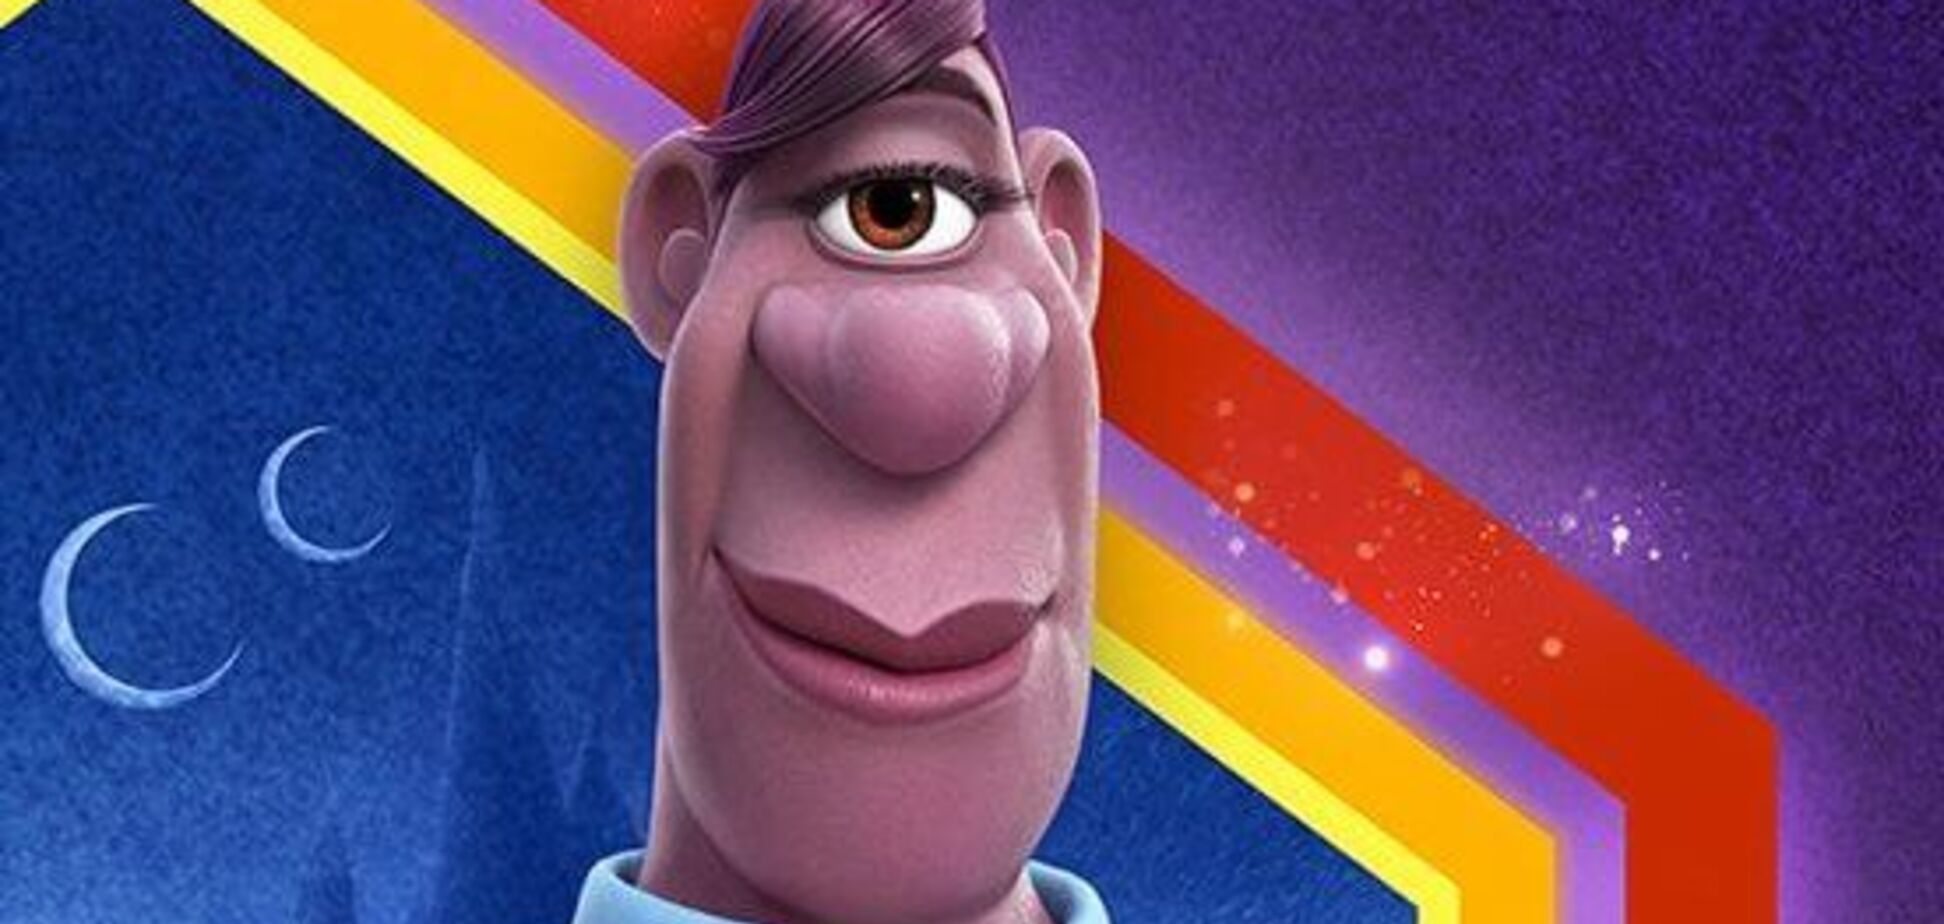 В мультфильме Pixar 'Вперёд' появился первый ЛГБТ-персонаж. Фото